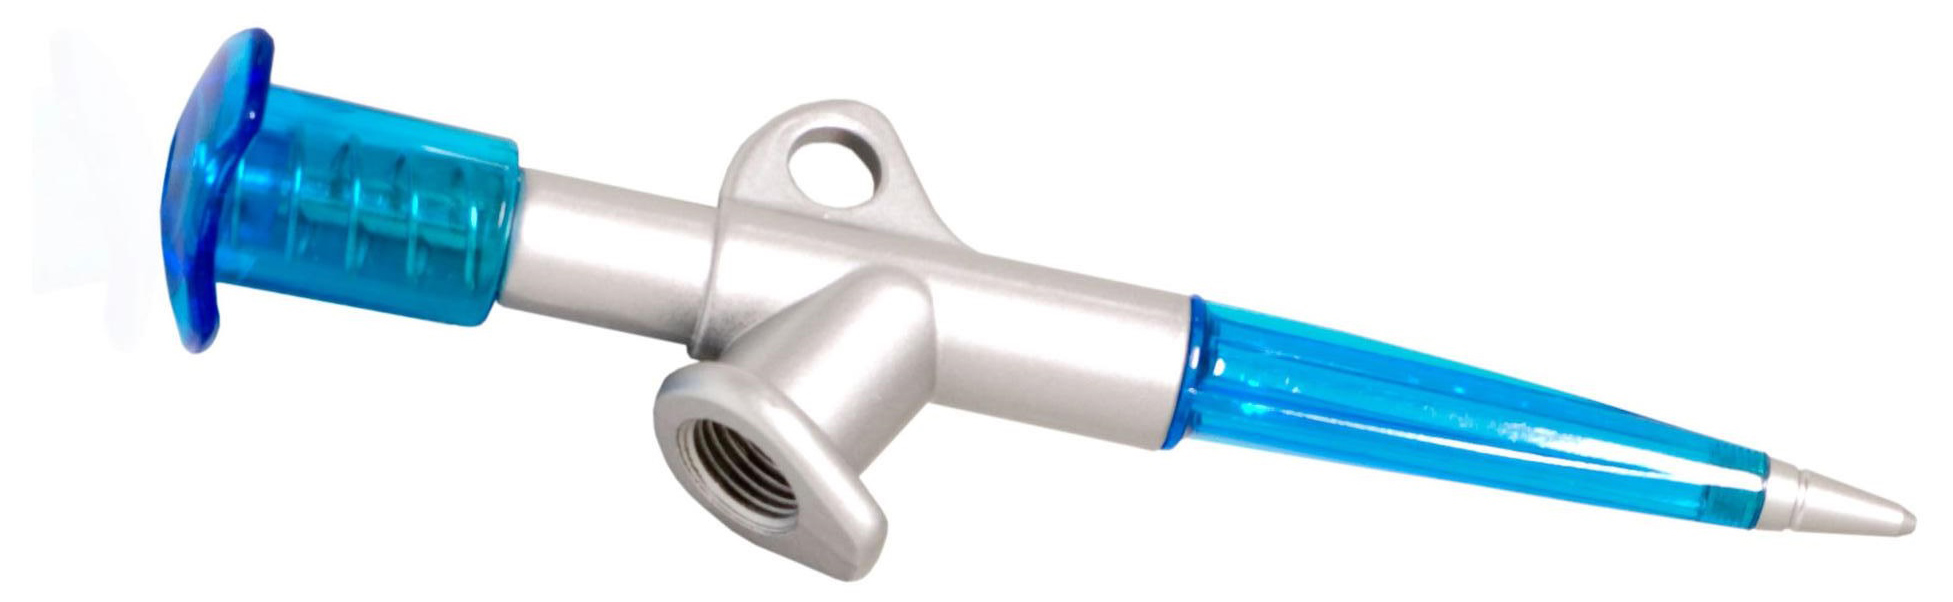  Инструмент для велосипеда Shimano для нанесения смазки (WS8000441)